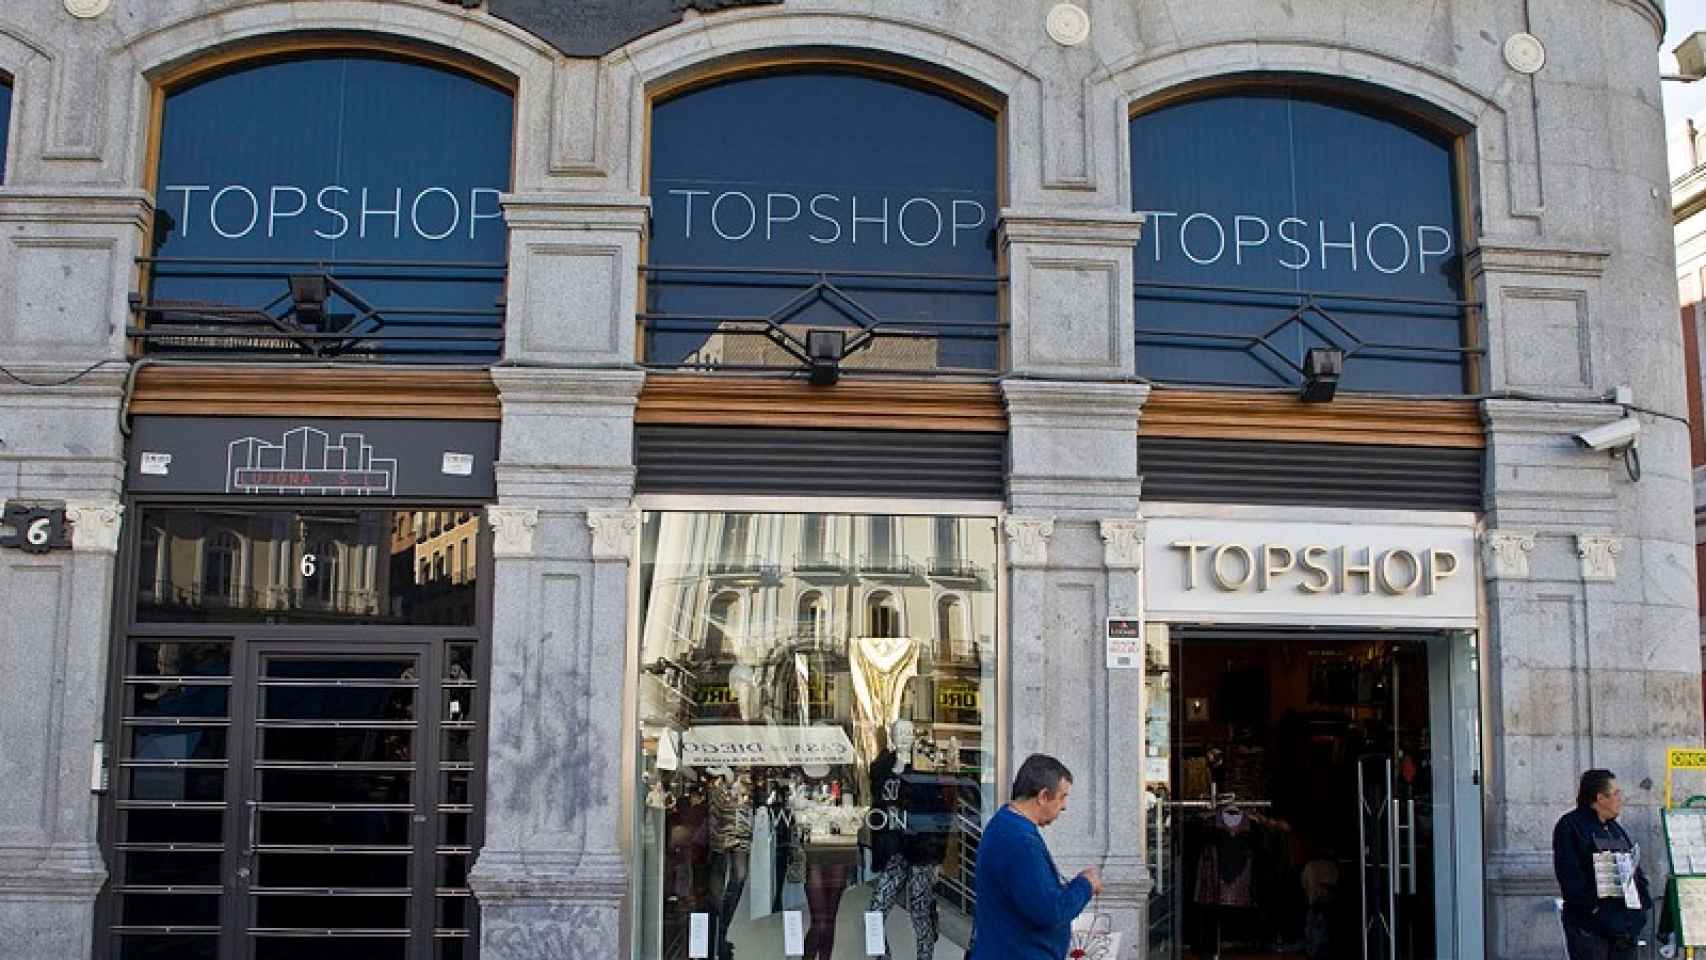 La fachada de la tienda Topshop de la Puerta del Sol, en Madrid.